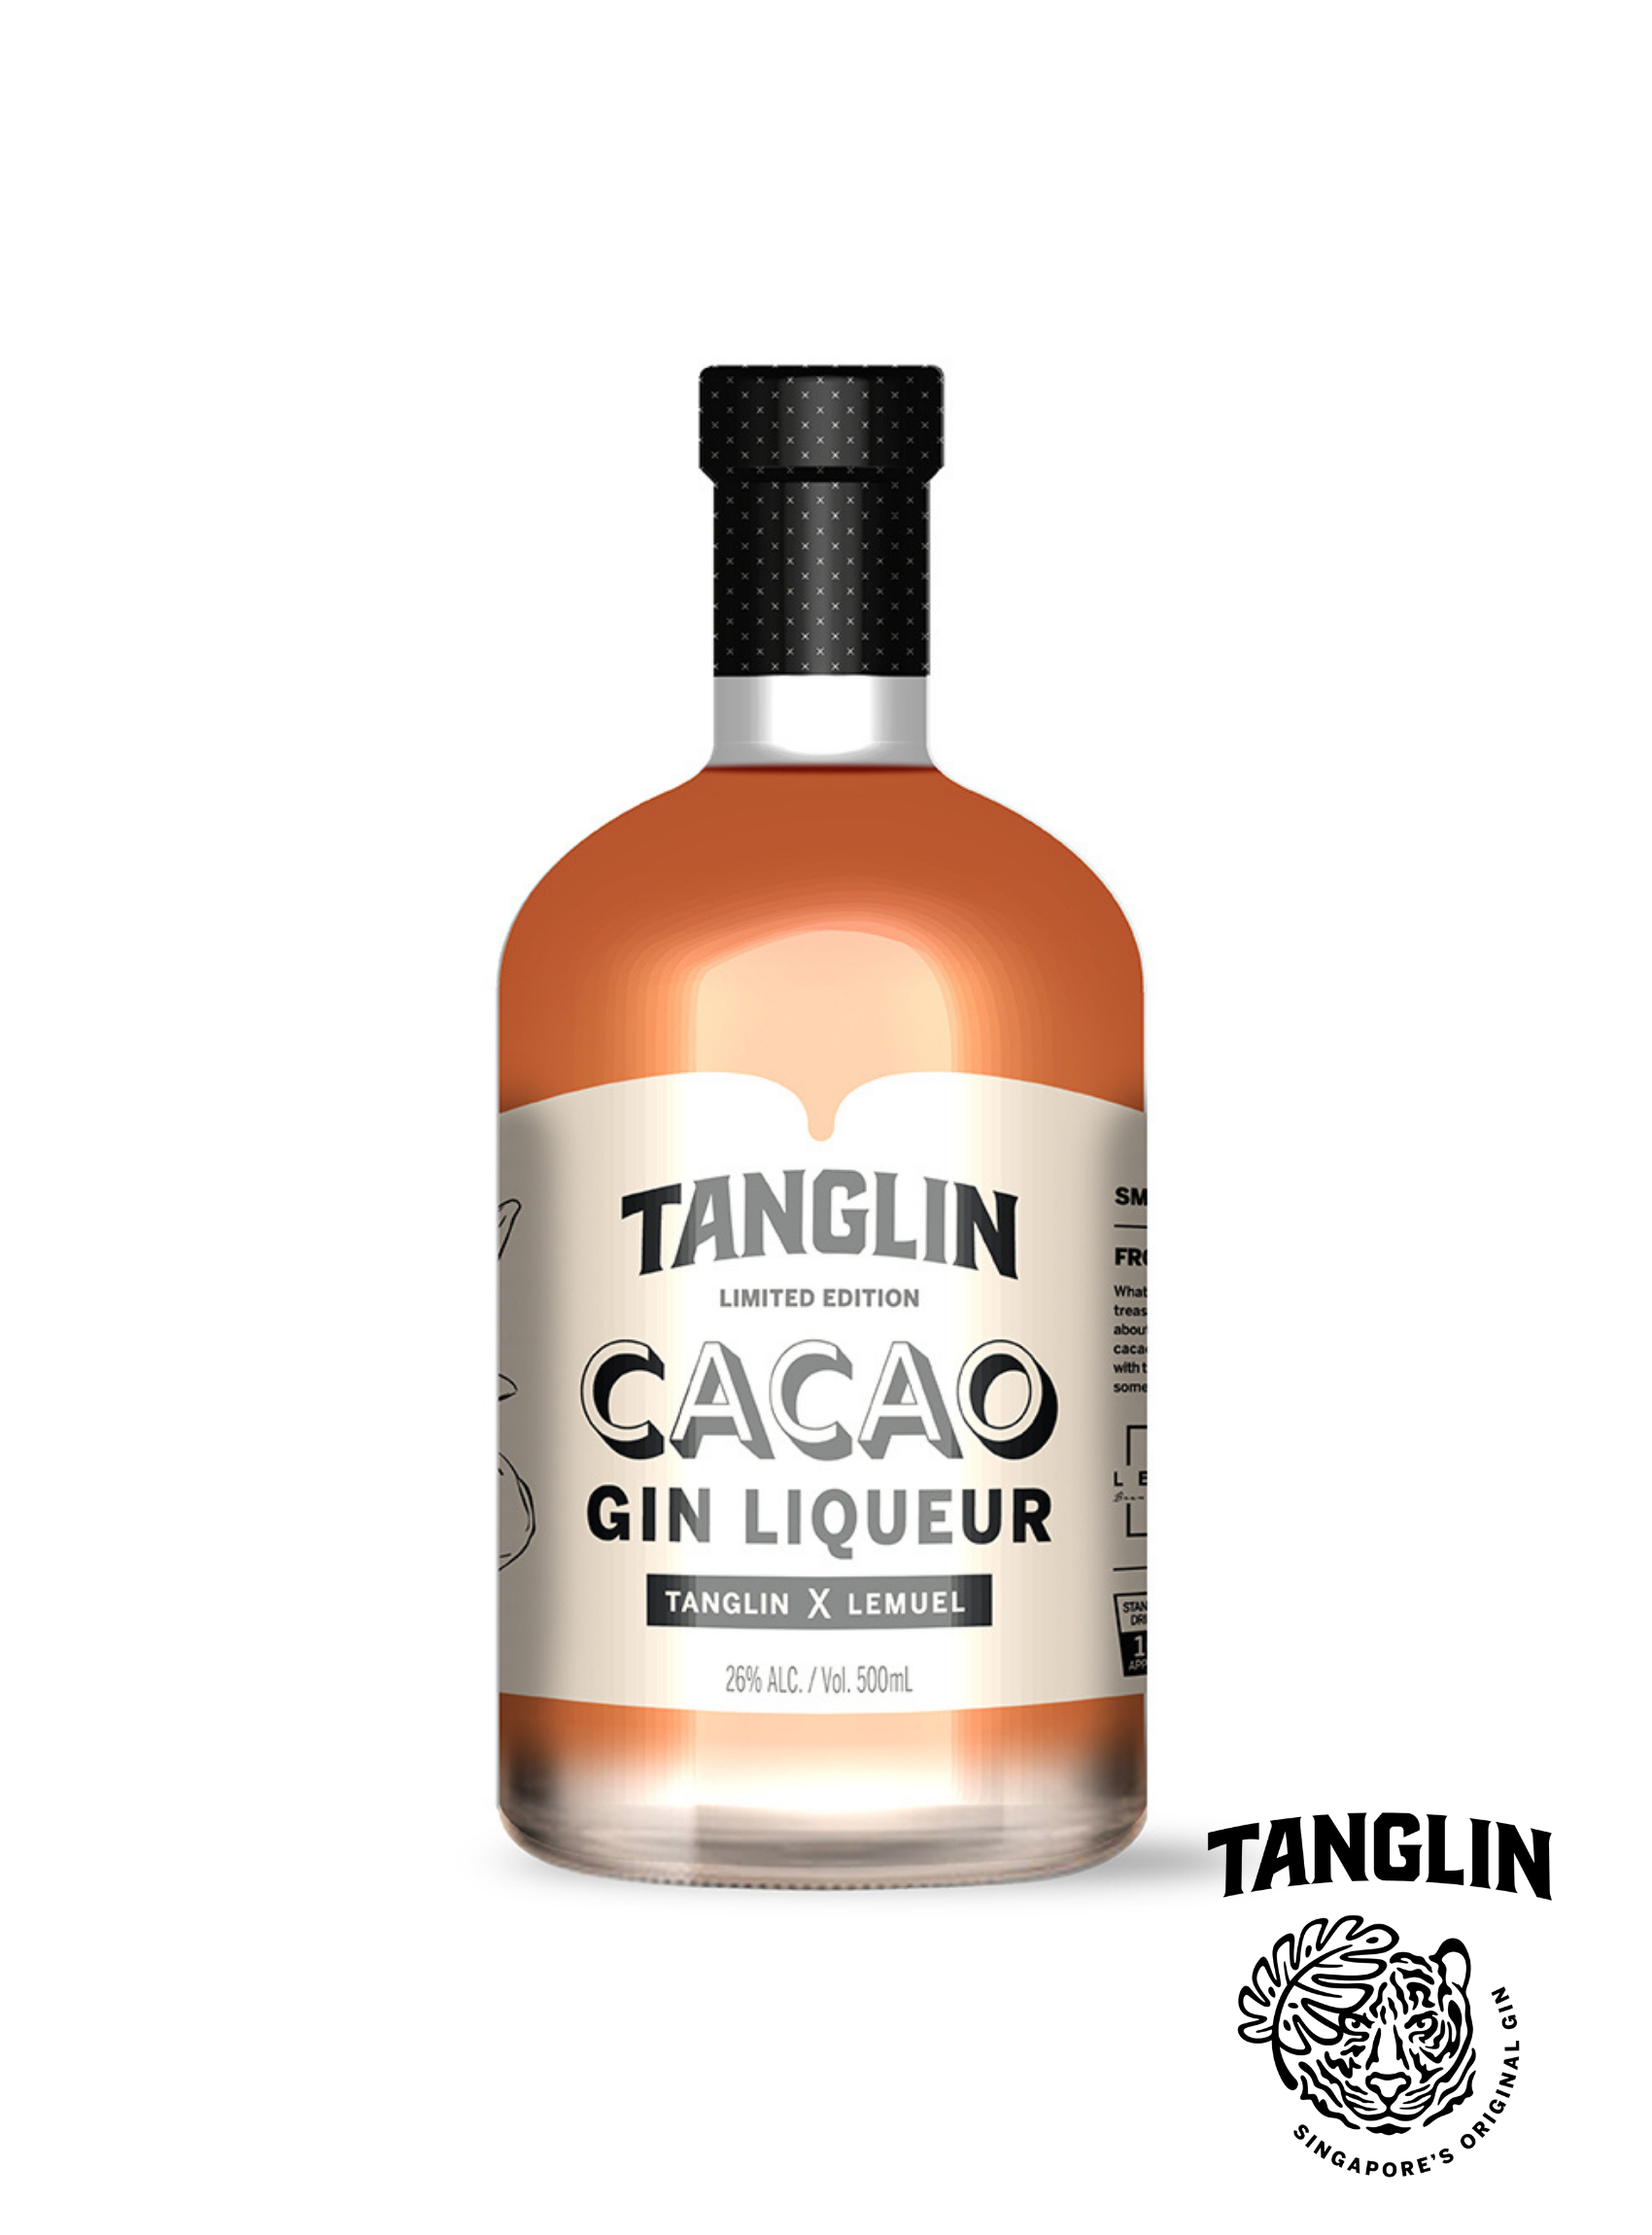 Tanglin Gin: Cacao Gin Liqueur, 26.0% (500ml) – 88 Bamboo